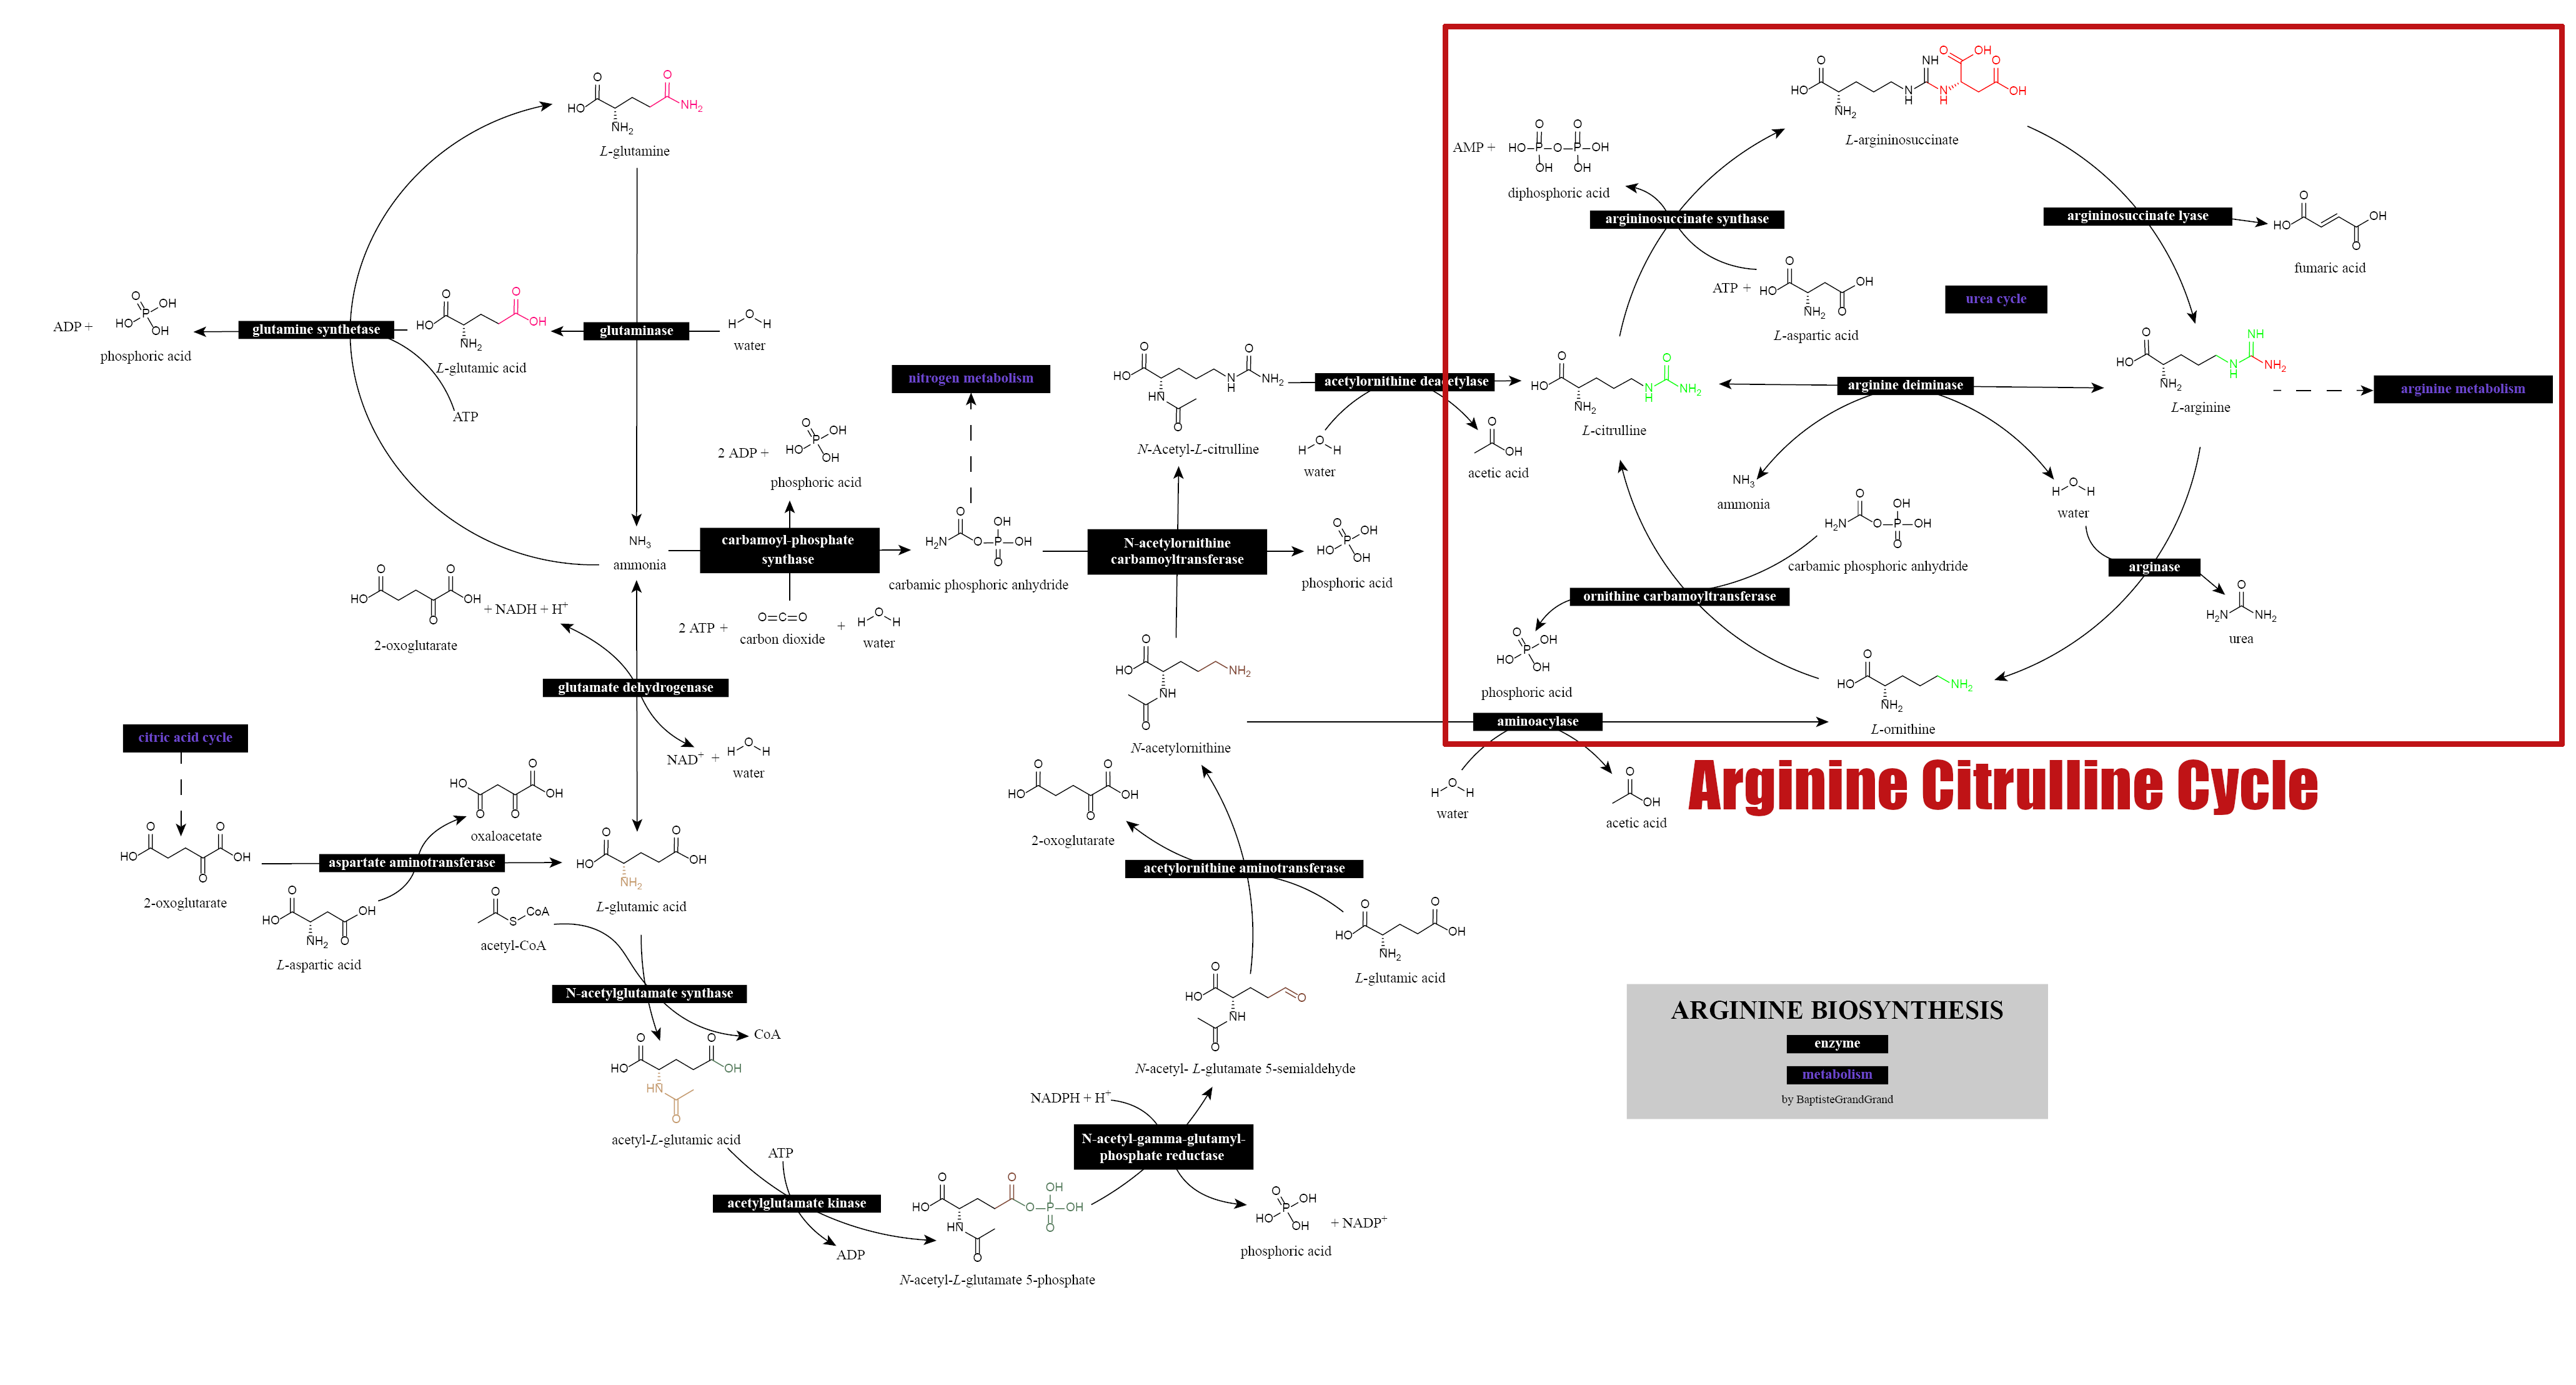 Arginine Biosynthesis System